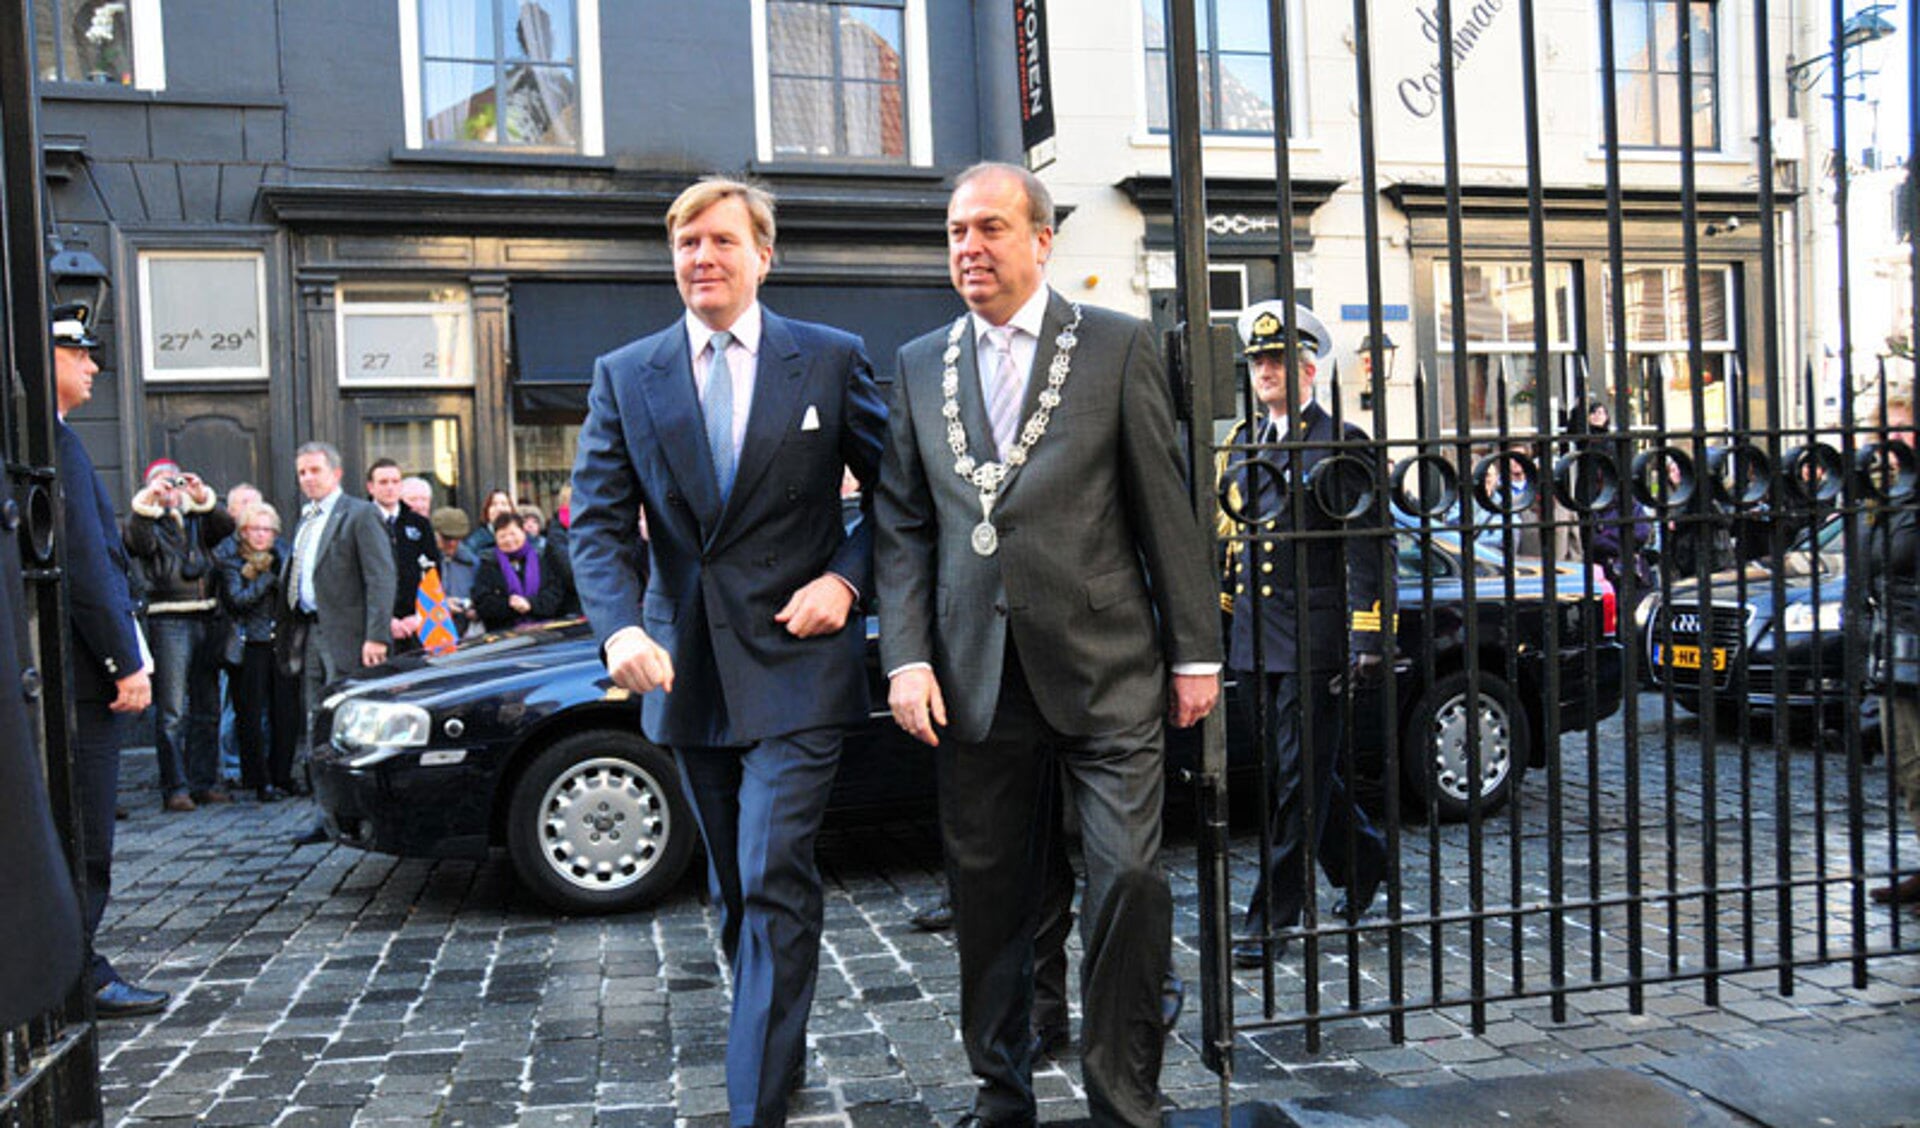 Bezoek van toen nog prins Willem-Alexander aan de Grote Kerk in 2010.